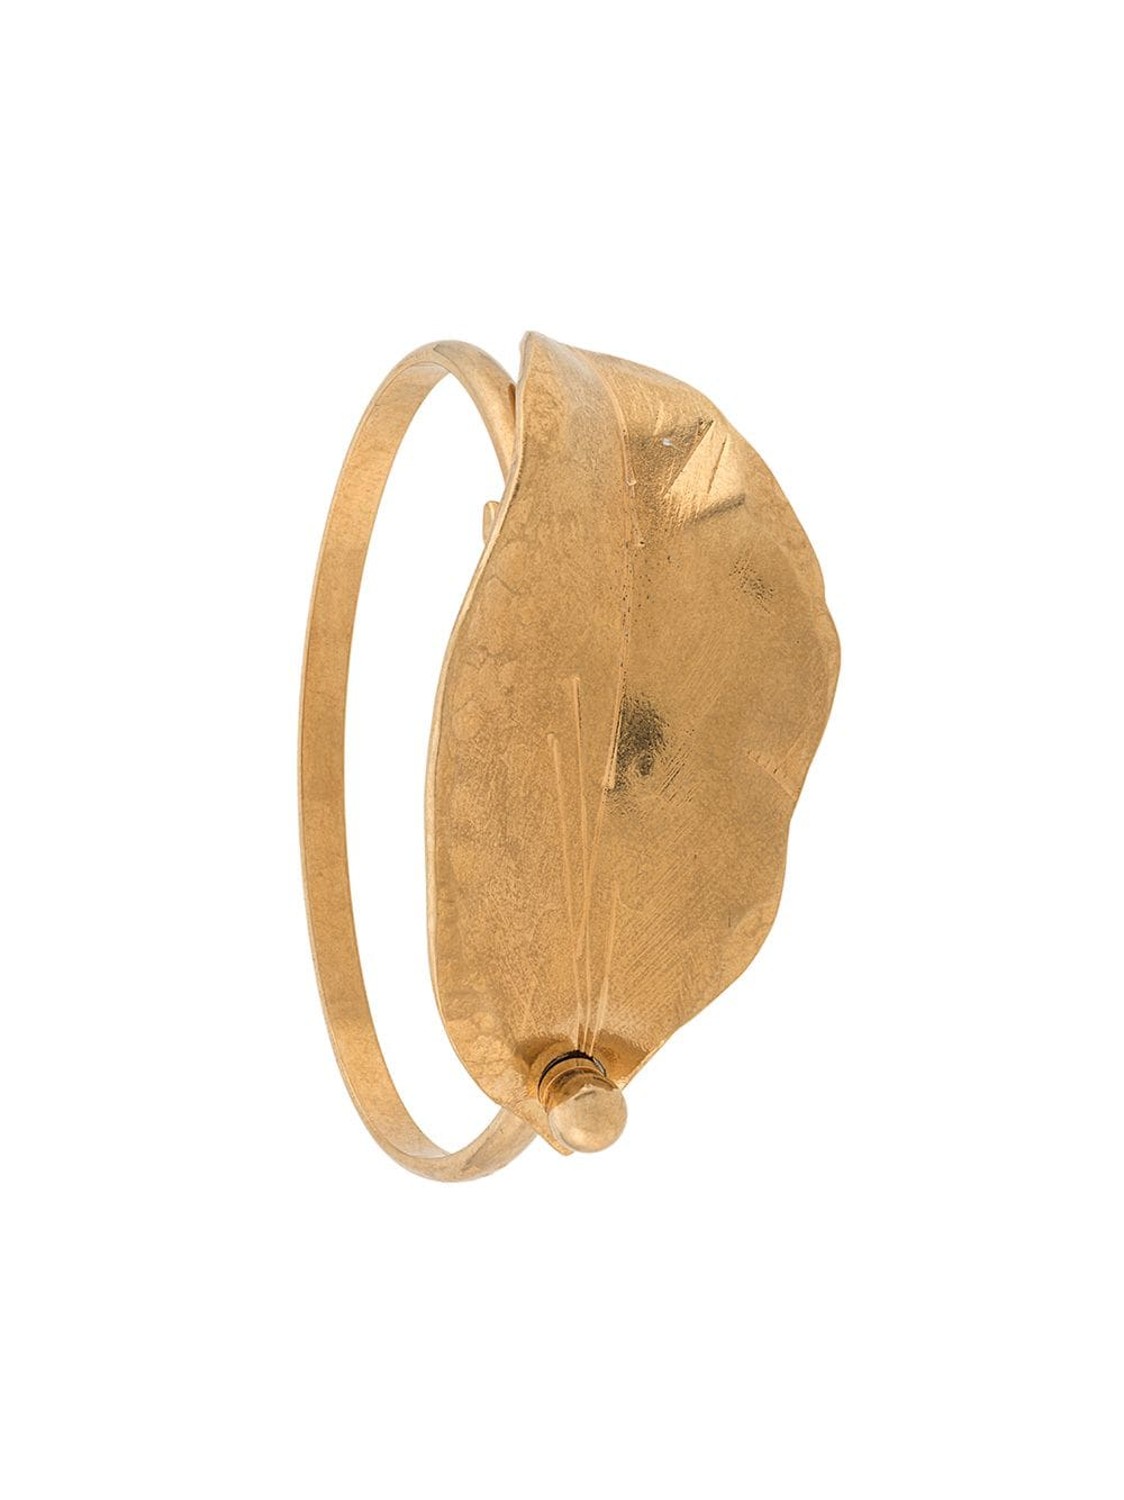 shop Marni Saldi Bijoux: Bijoux Marni, bracciale rigido con foglia.

Composizione: 100% ottone. number 1649